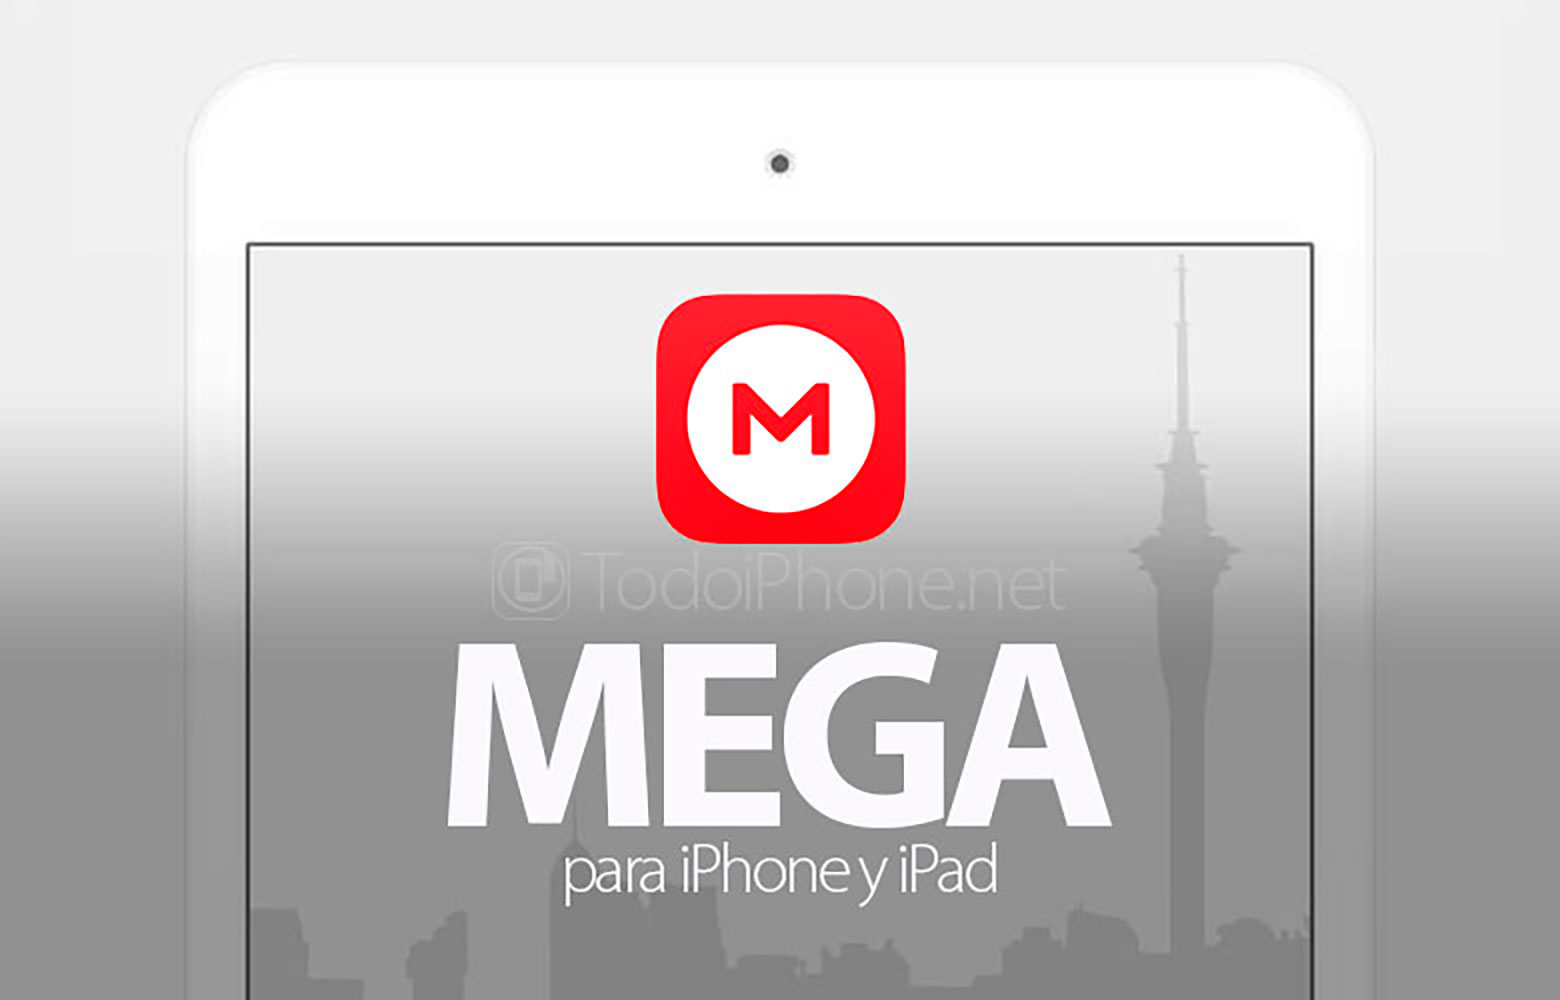 MEGA kommer med nya funktioner för iPhone och iPad 2